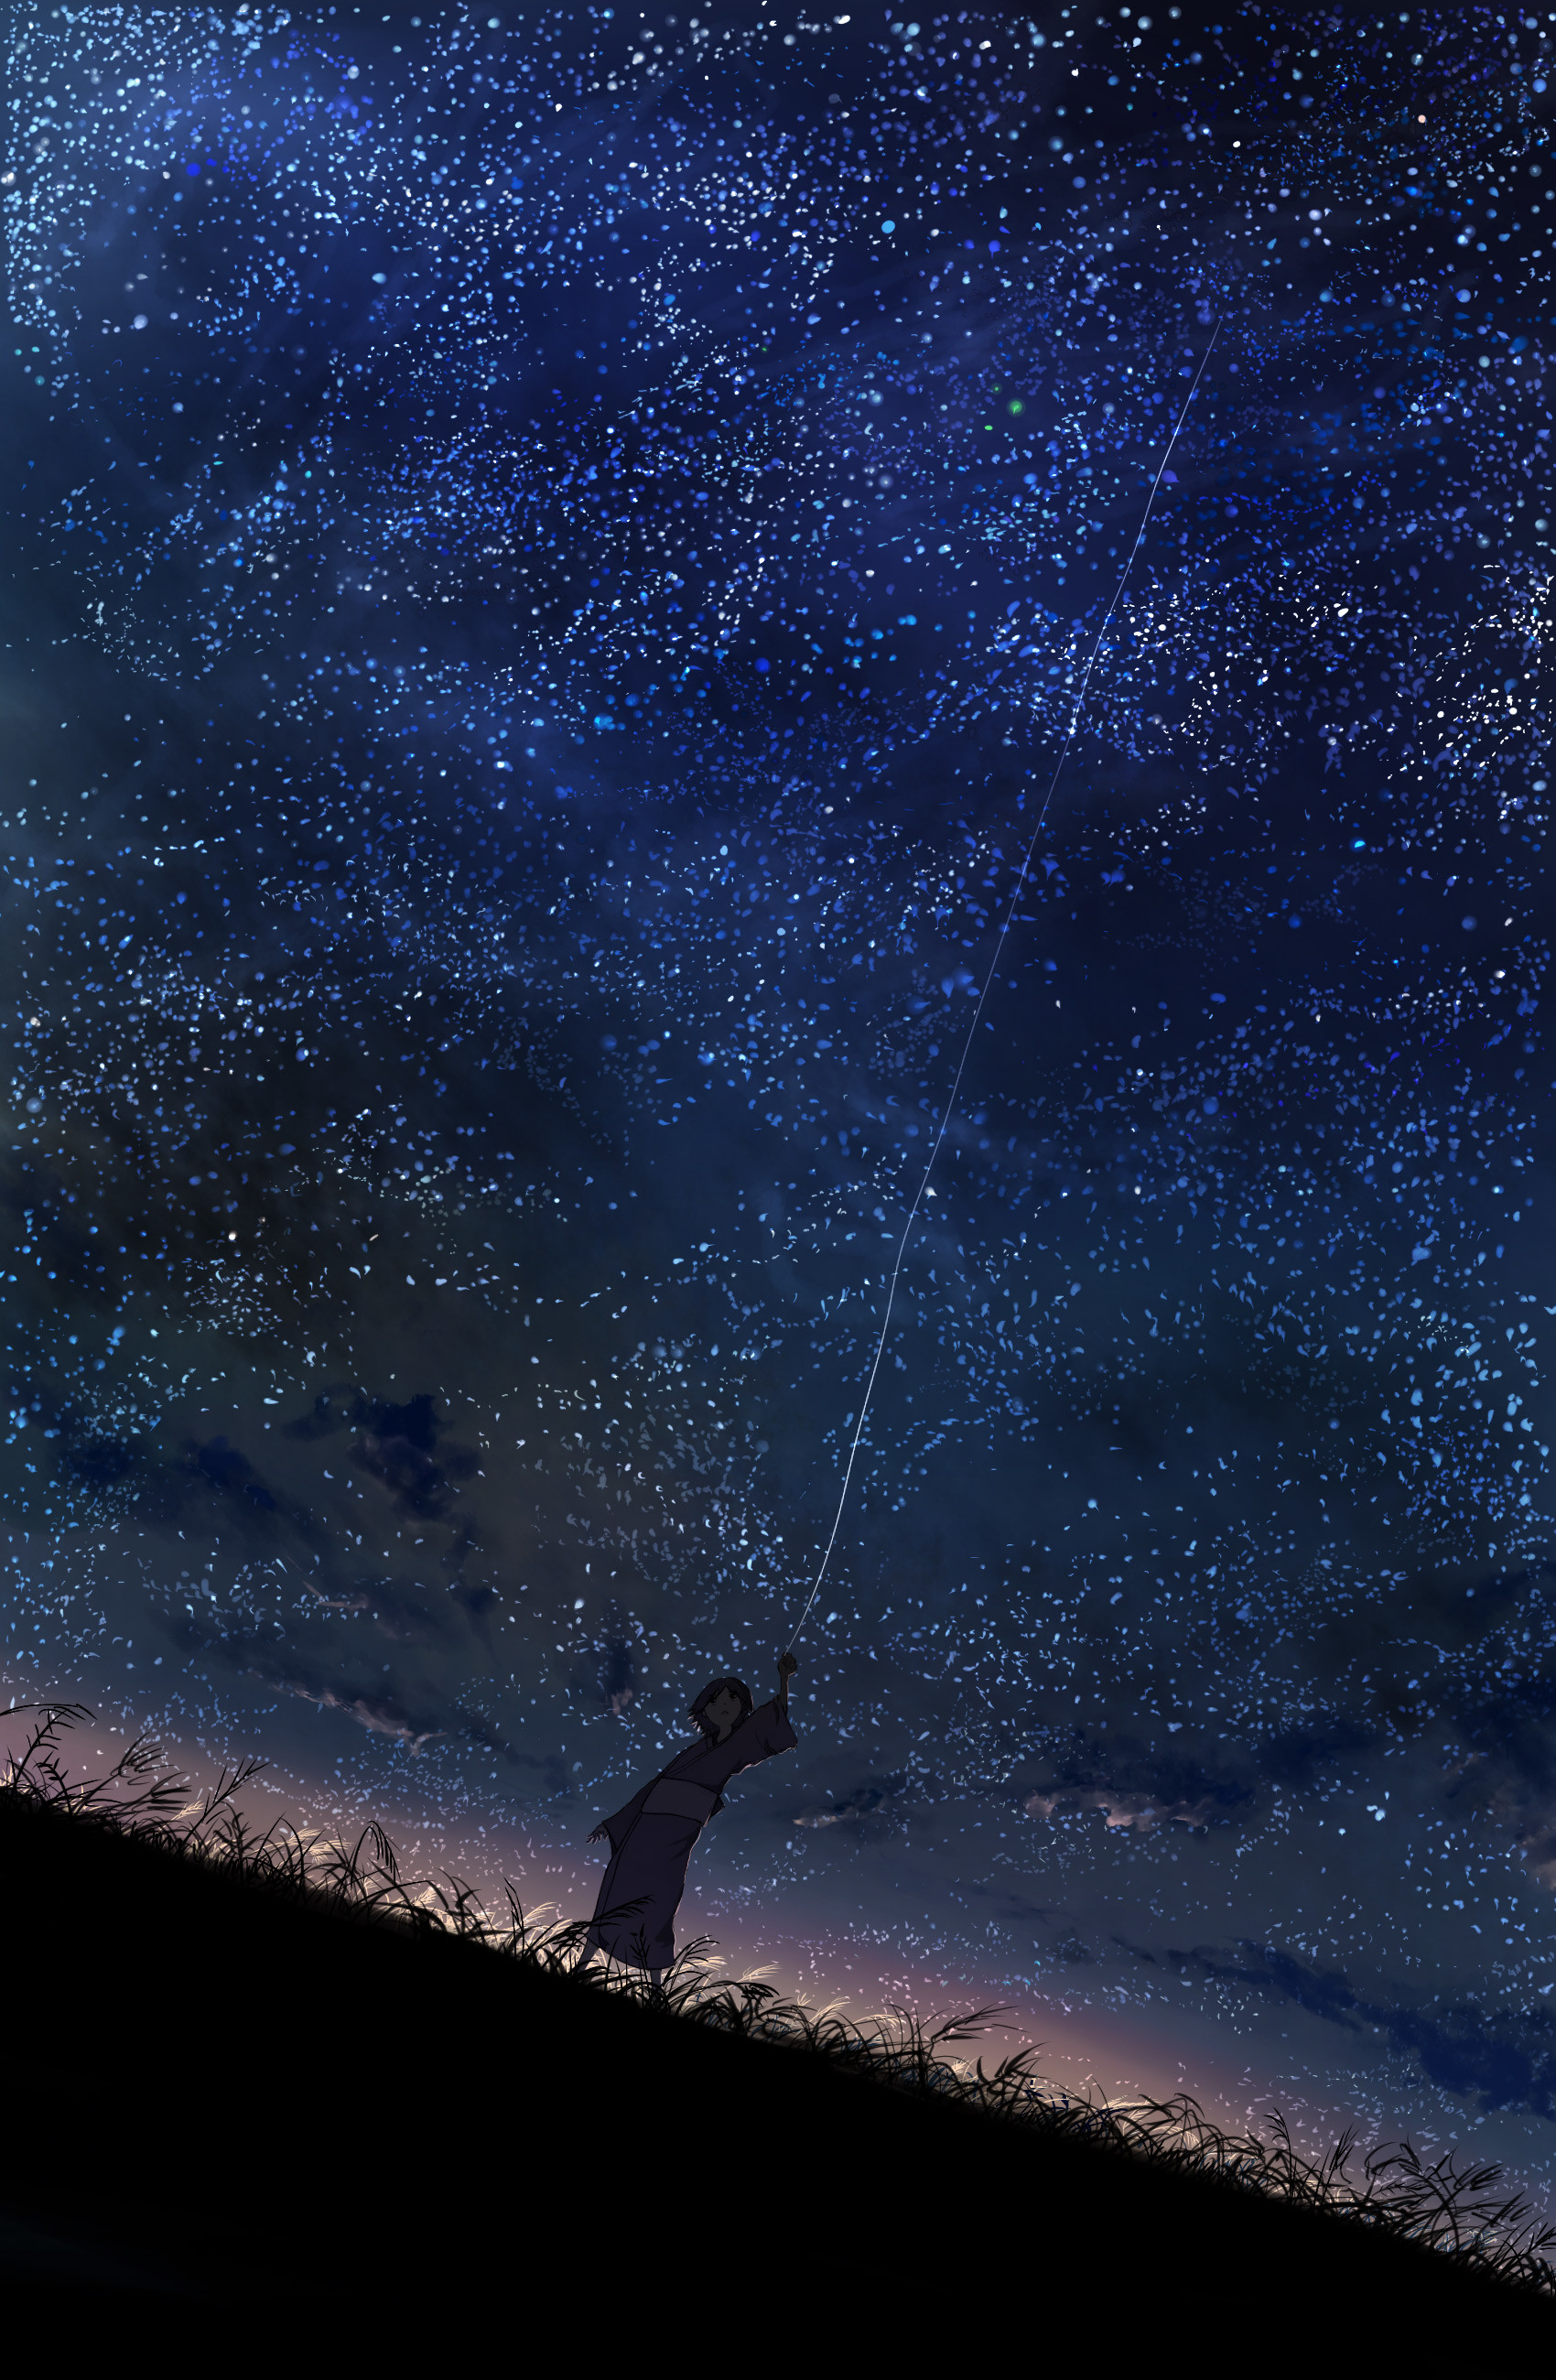 cielo nocturno estrellas fondo de pantalla,cielo,atmósfera,noche,objeto astronómico,espacio